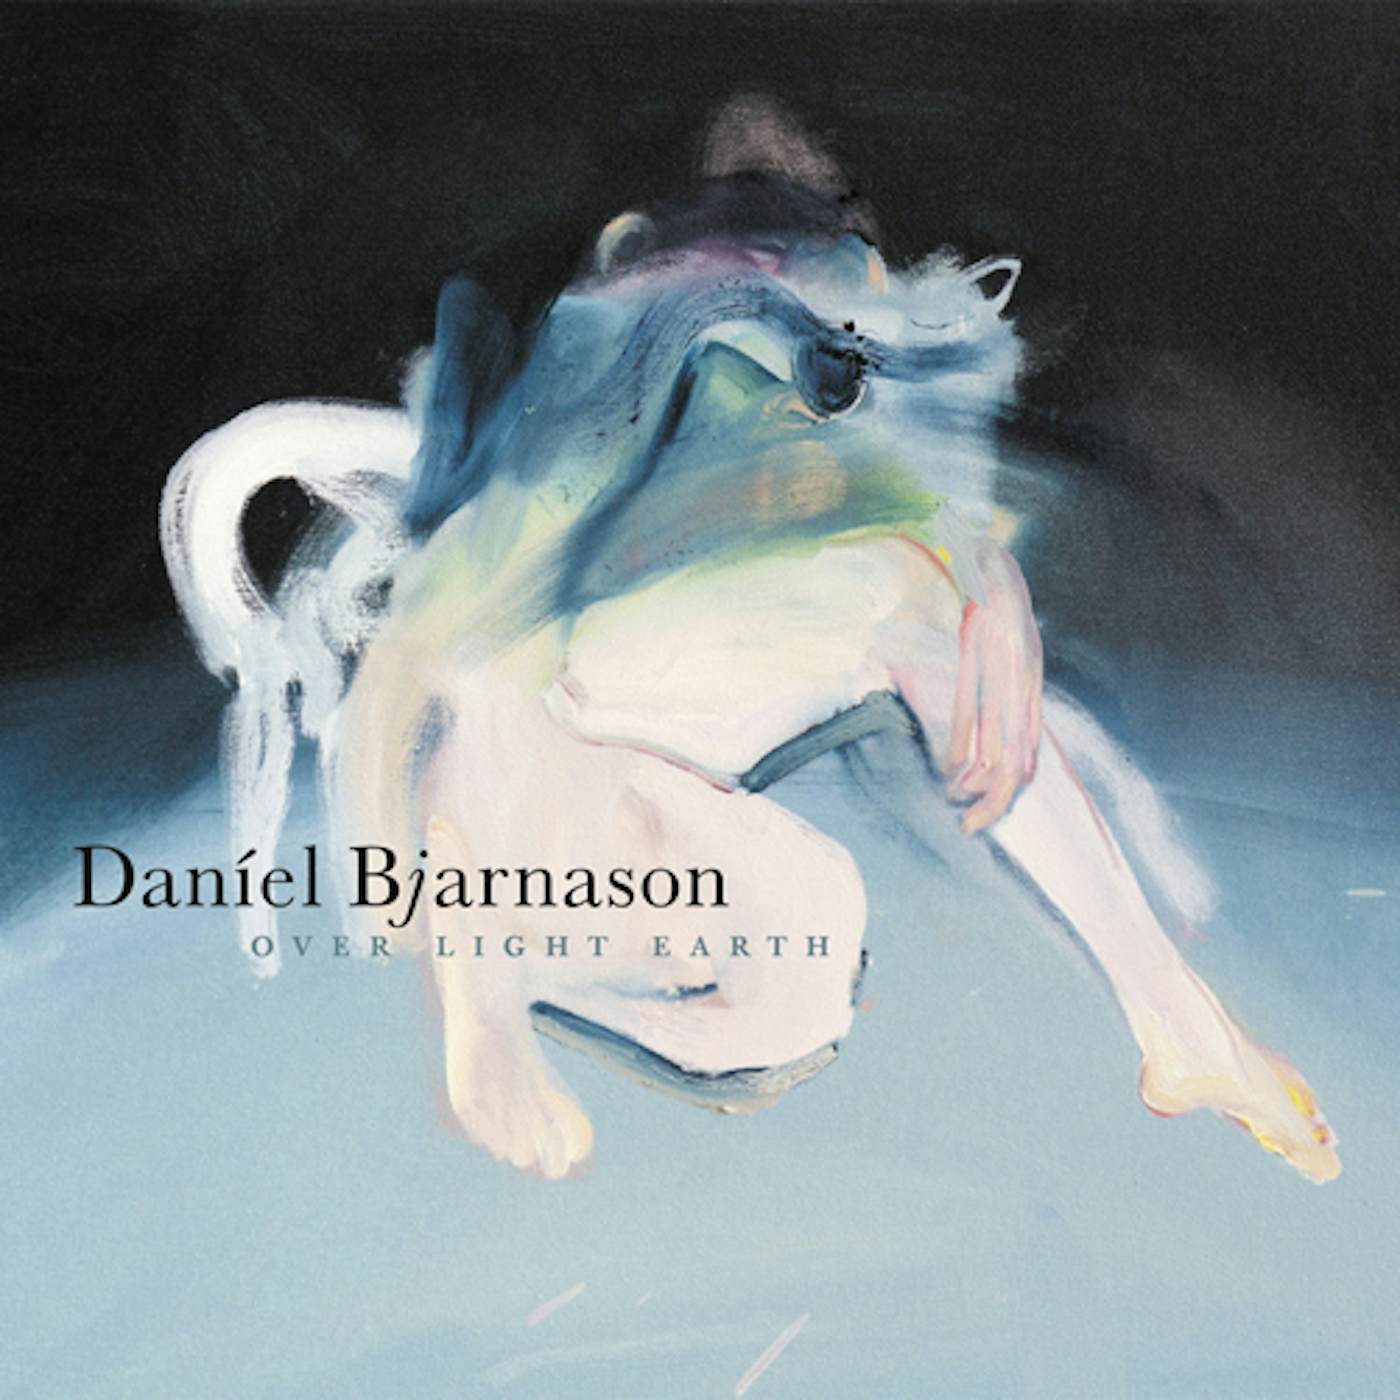 Daníel Bjarnason Over Light Earth Vinyl Record